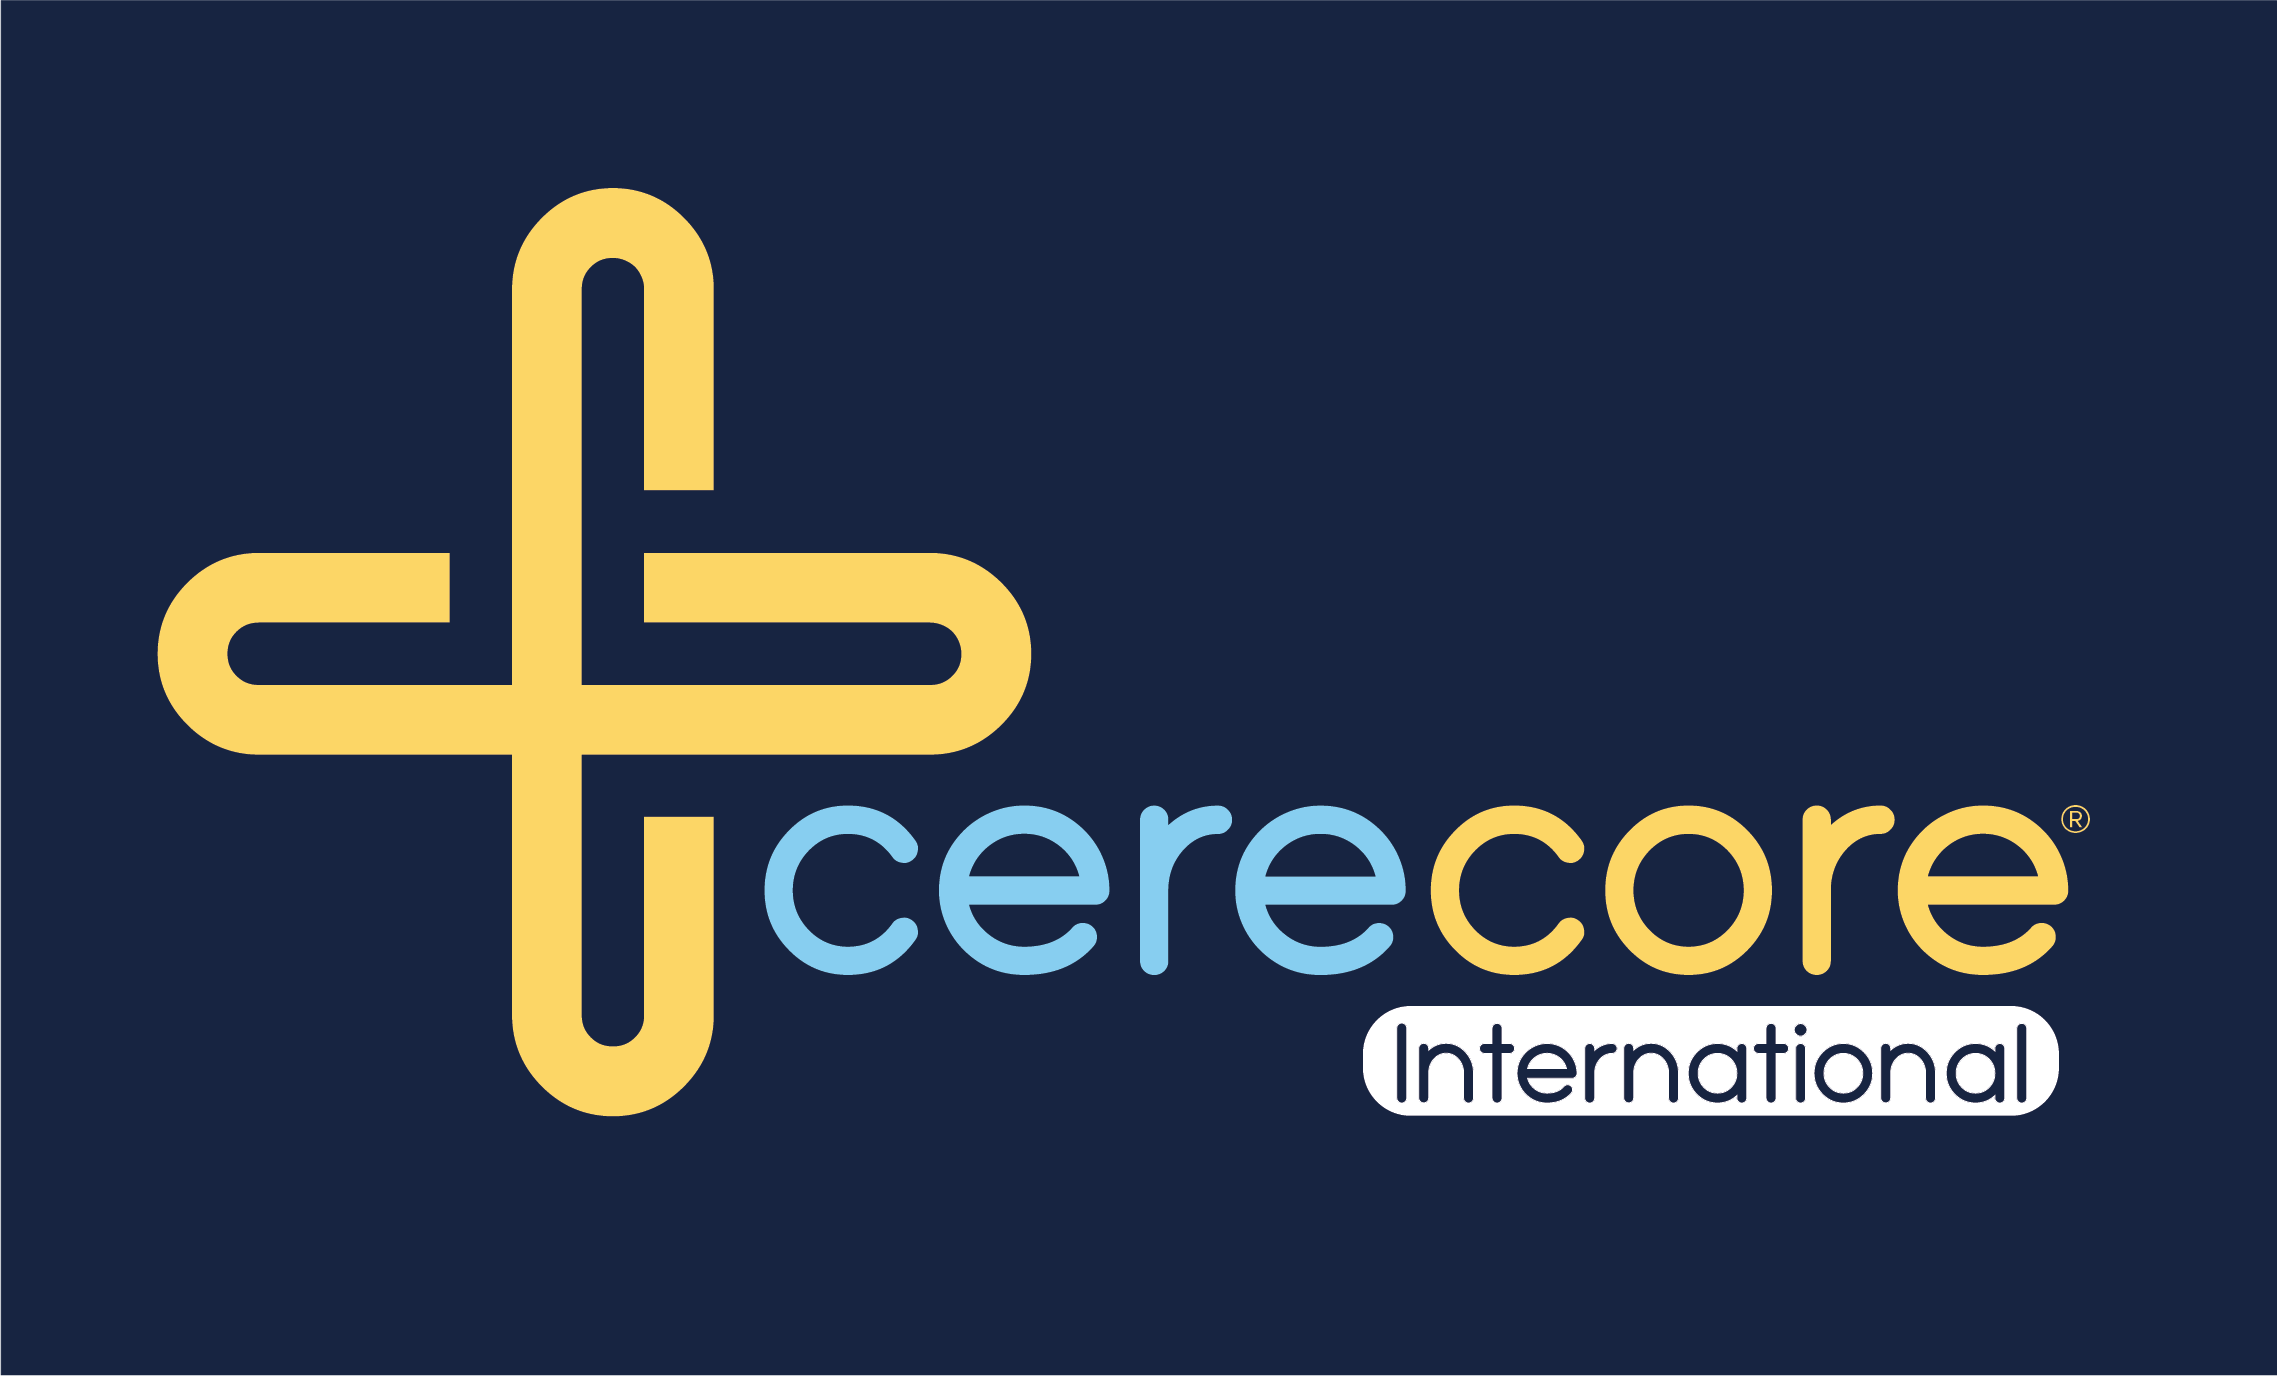 CereCoreLogo-International_Navy